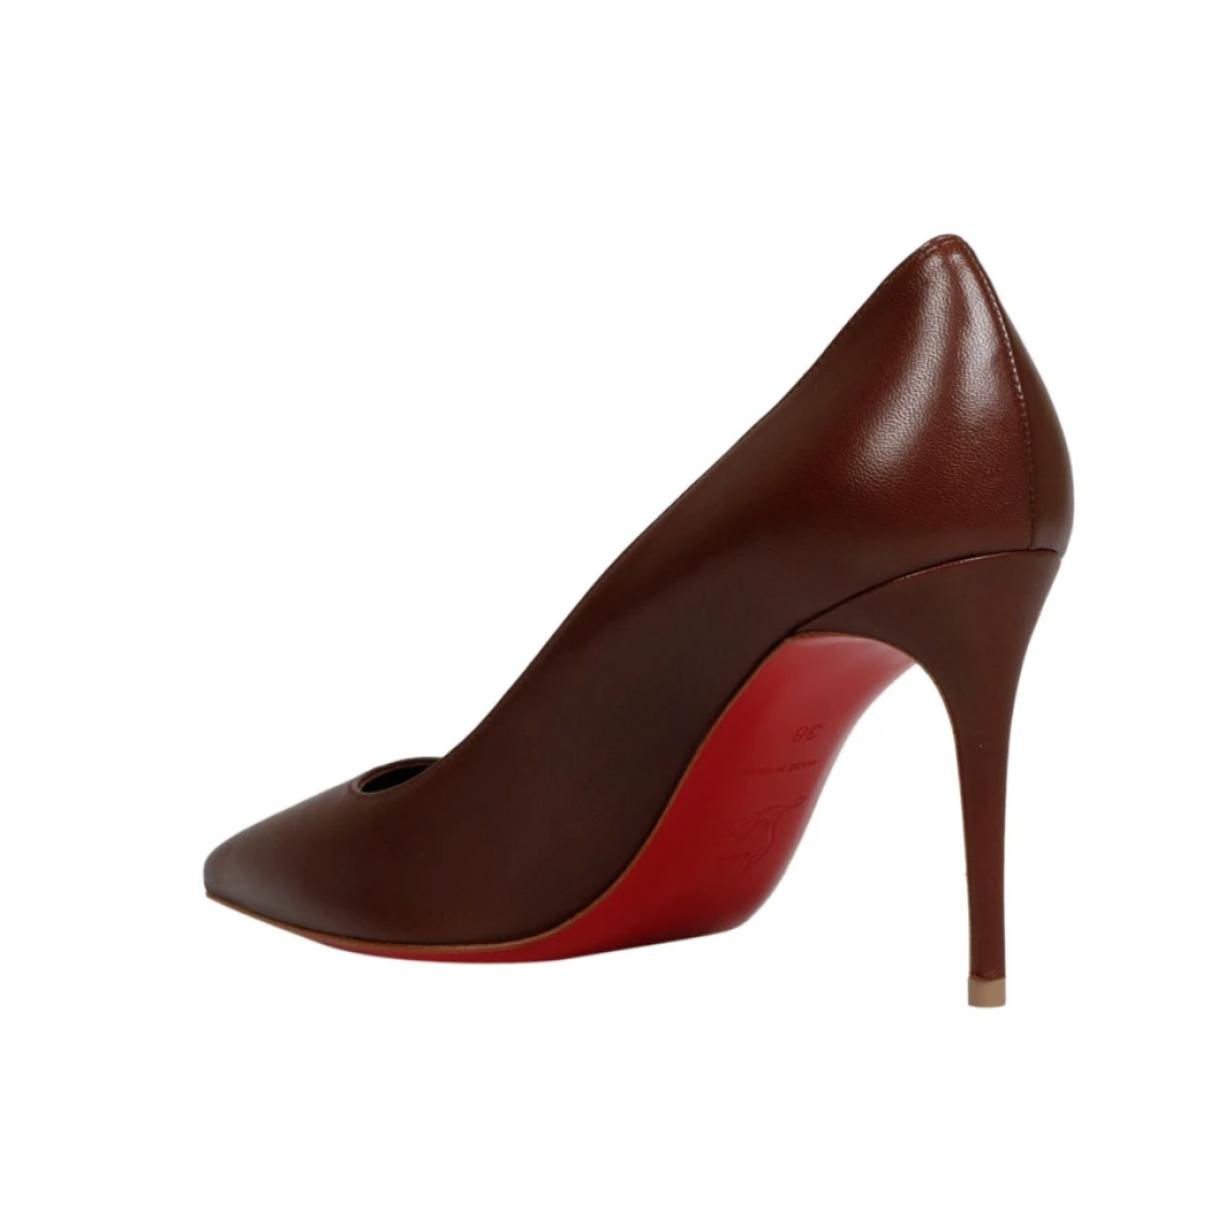 Leather heels - 3